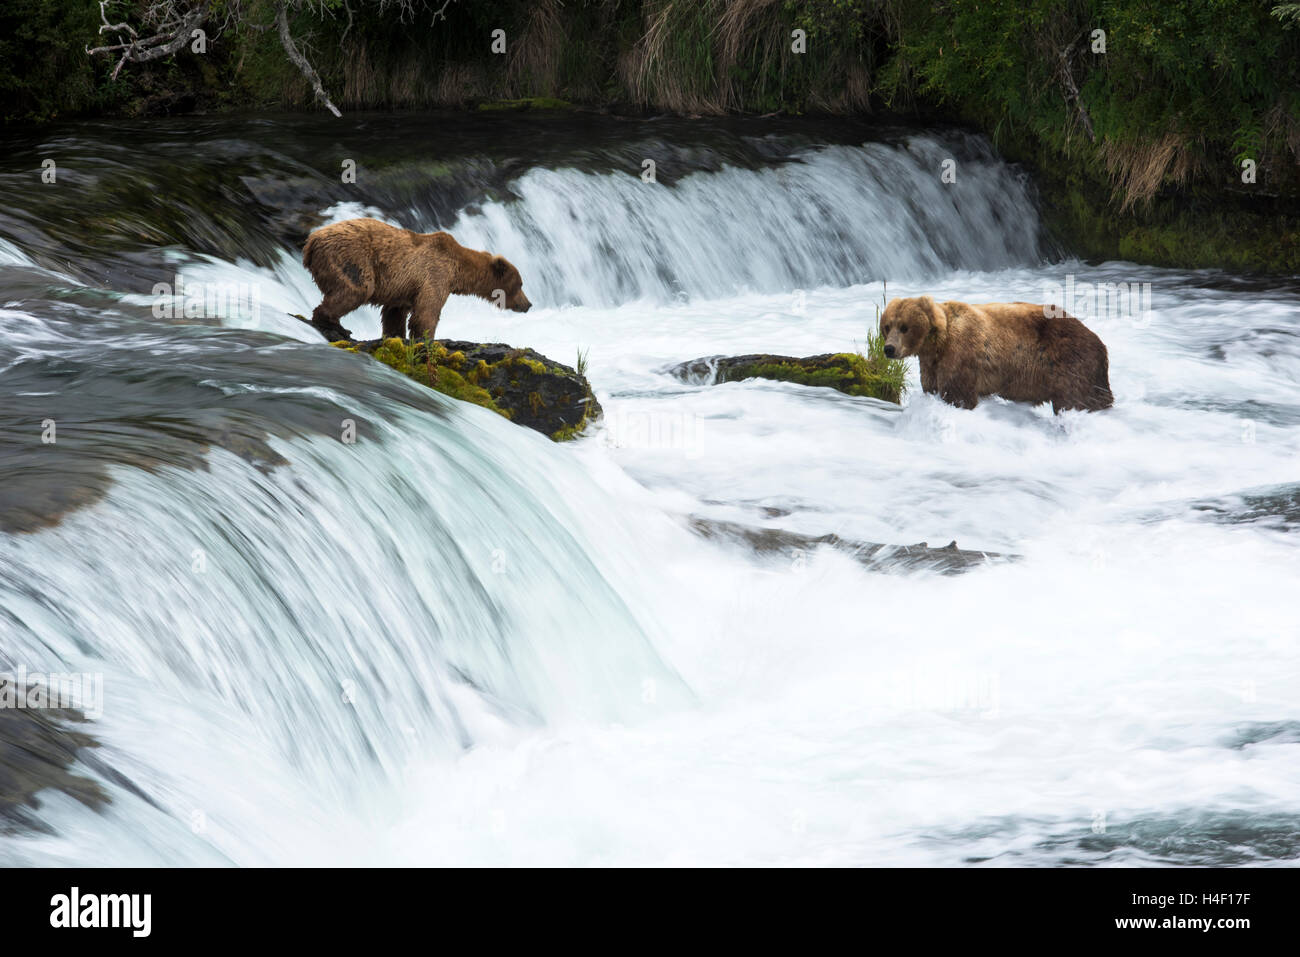 La caza de osos pardos de salmones en el río, los arroyos River, Parque Nacional Katmai, Alaska Foto de stock